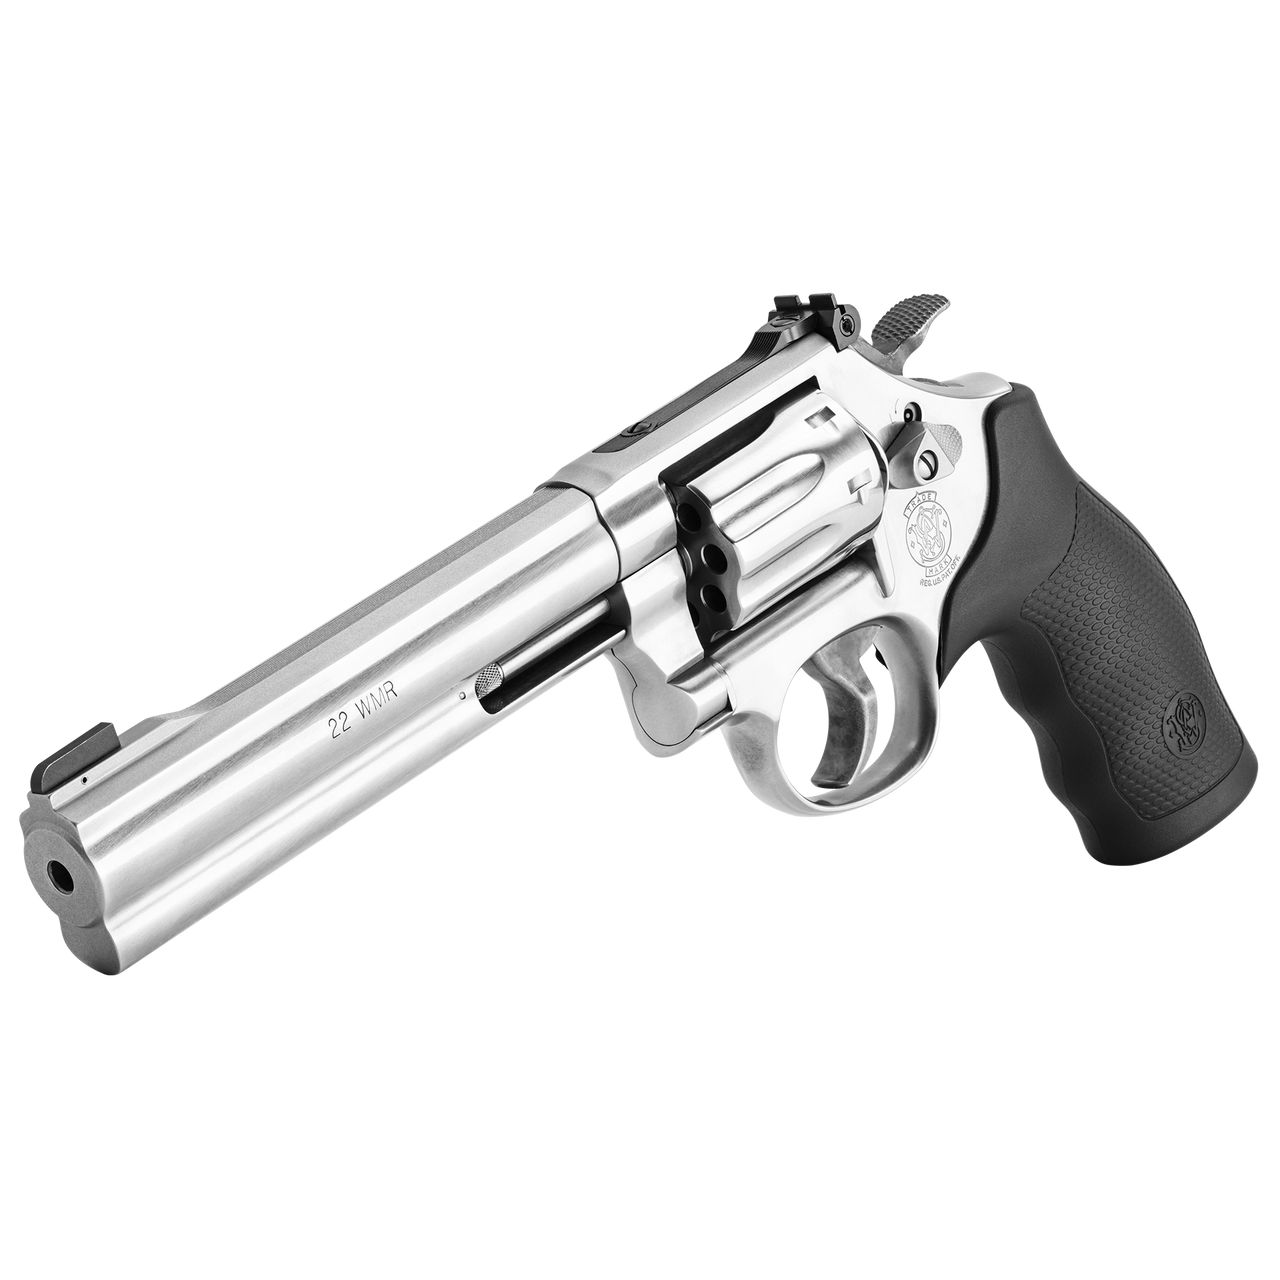 S&W Model 648 22Magnum 6” Barrel Revolver – SKU 12460 – 8 RD Capacity